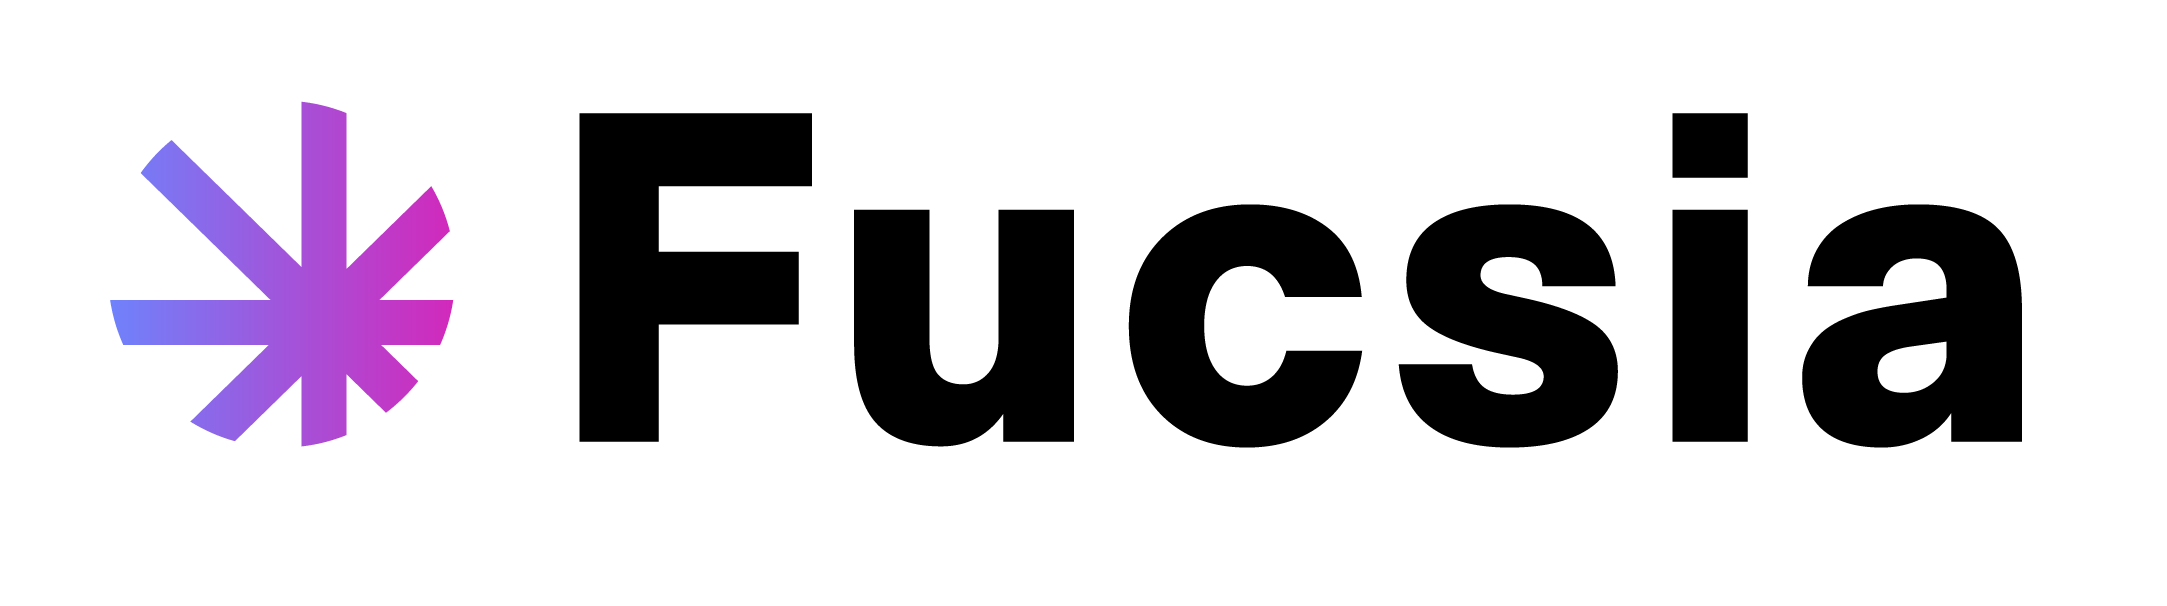 Fucsia Design Logo Black